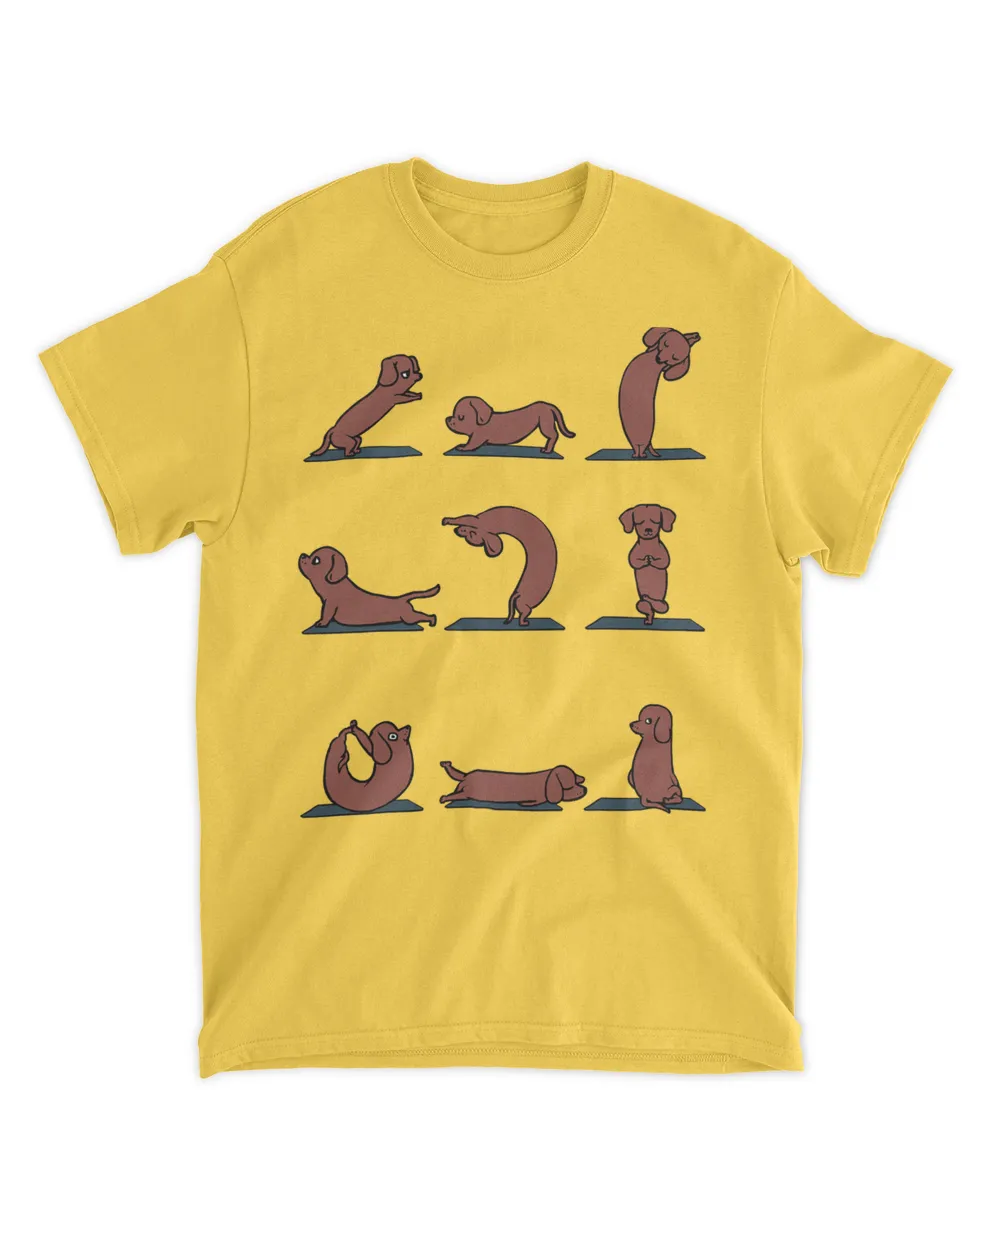 Dachshund Yoga Asana Pose and Meditation T-Shirt